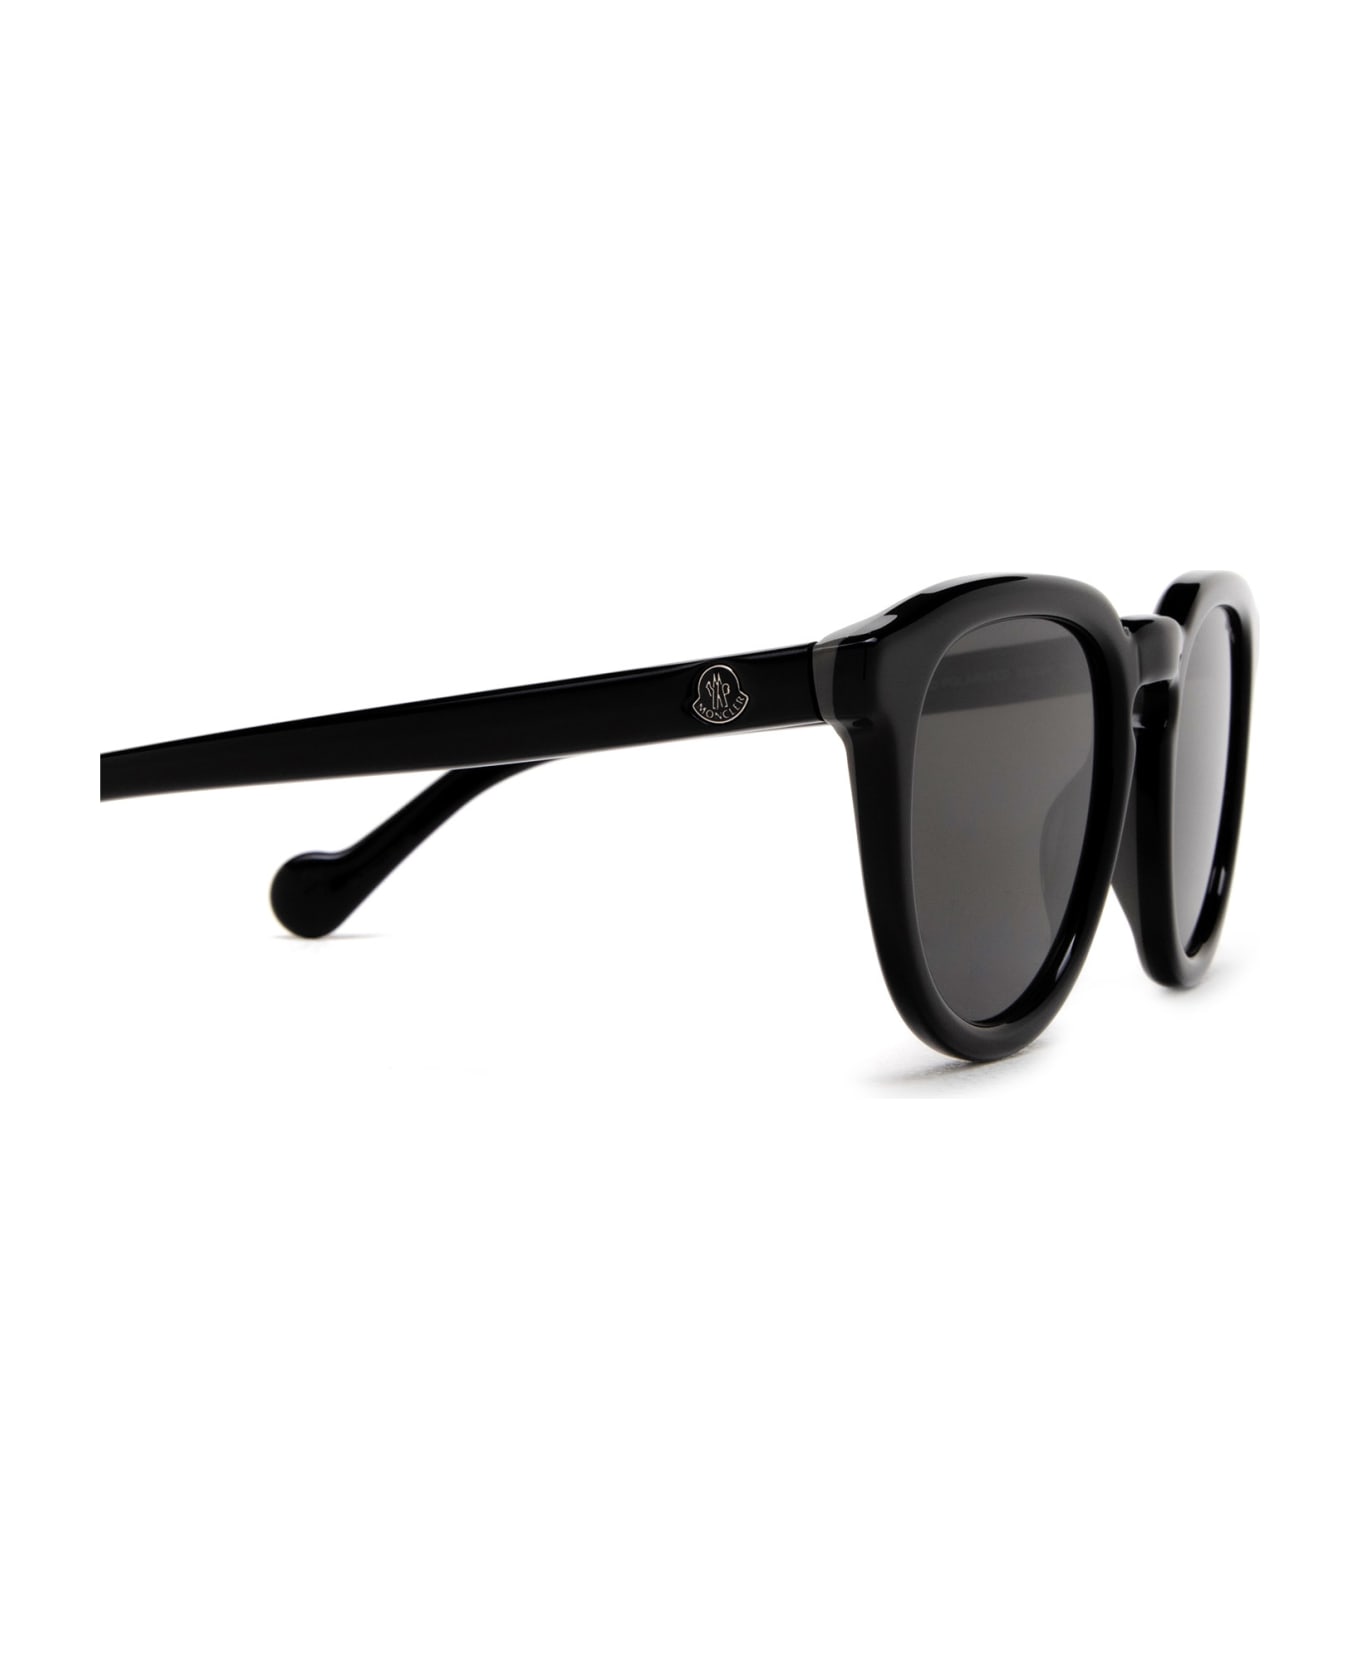 Moncler Eyewear Ml0229 Shiny Black Sunglasses - Shiny Black